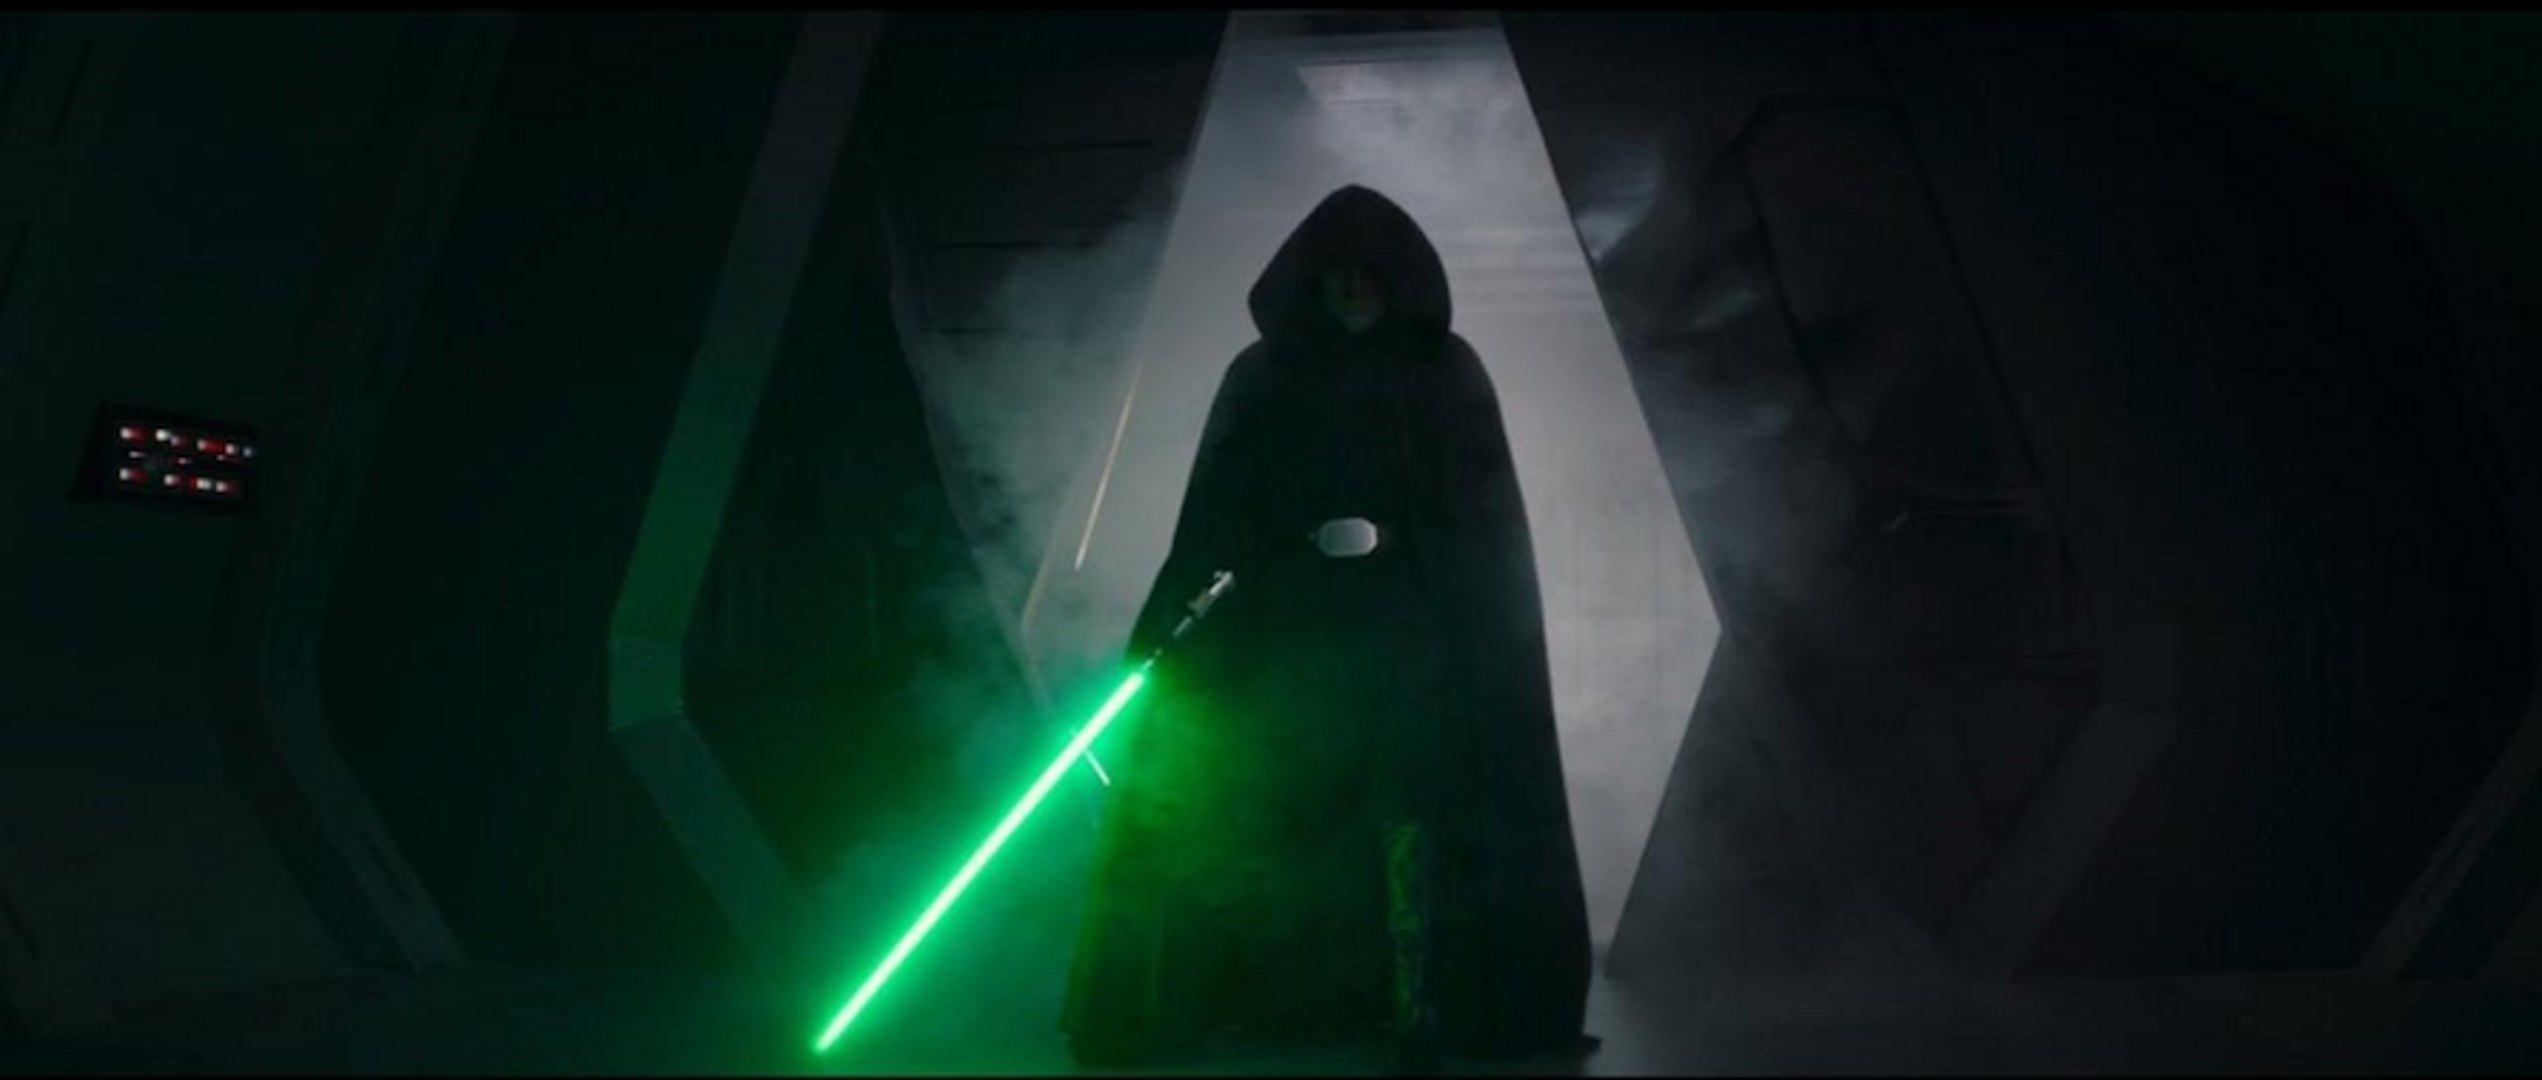 Théorie The Mandalorian : et si Luke était un clone maléfique ?